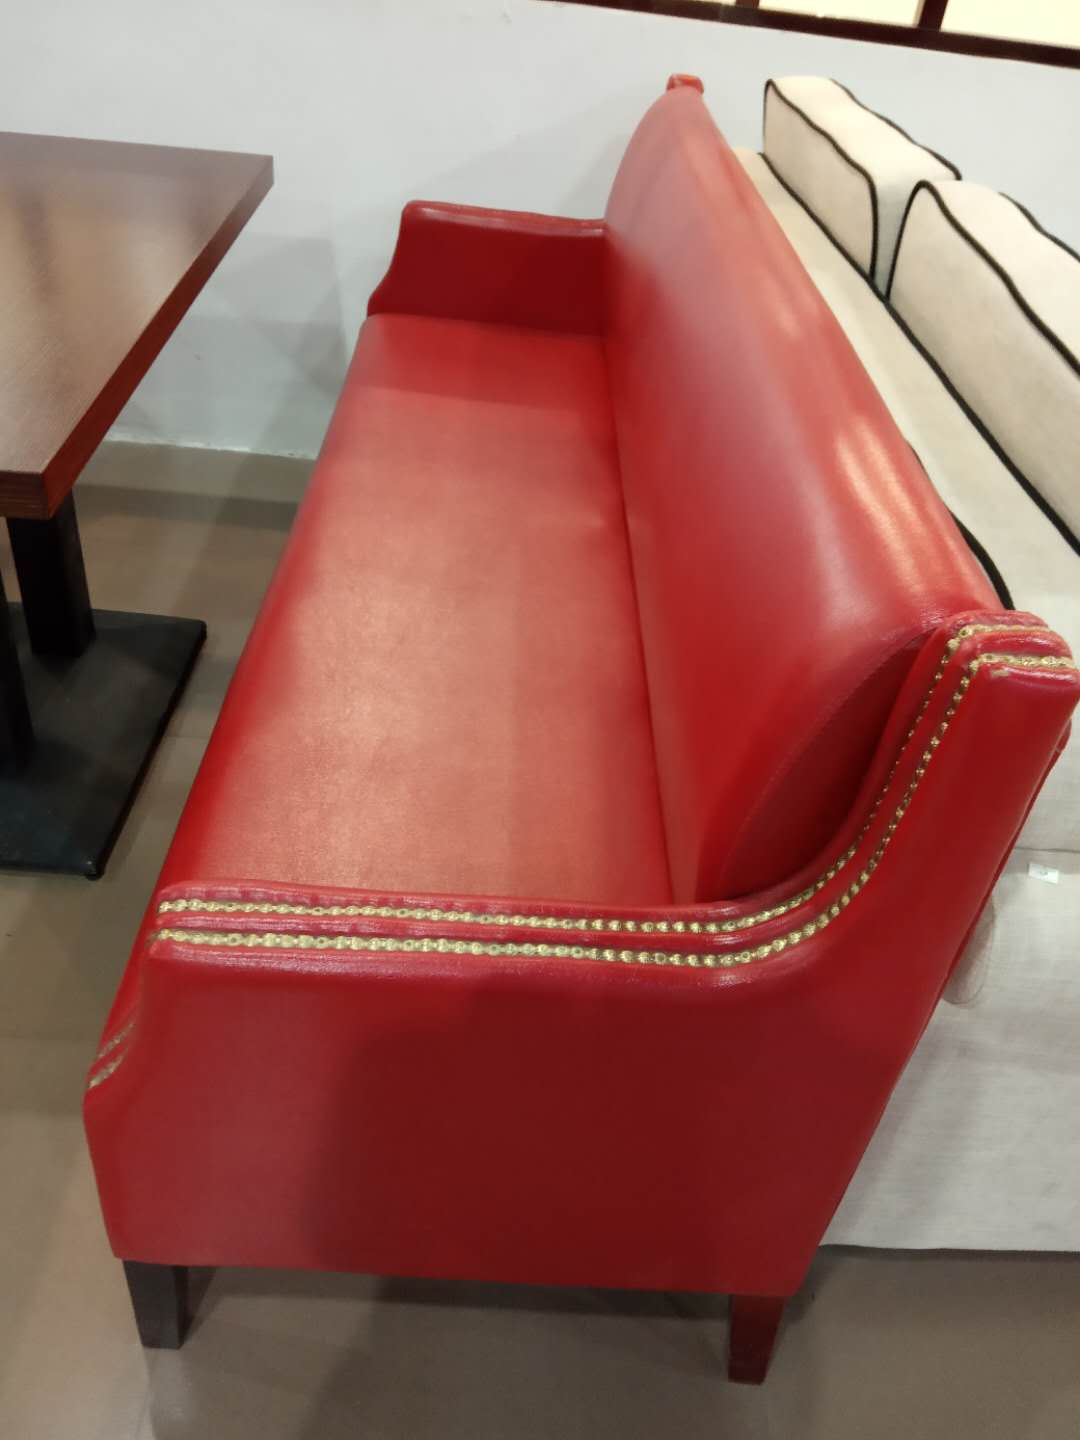 达州三鑫家具厂定做加工批发桌椅沙发等家具